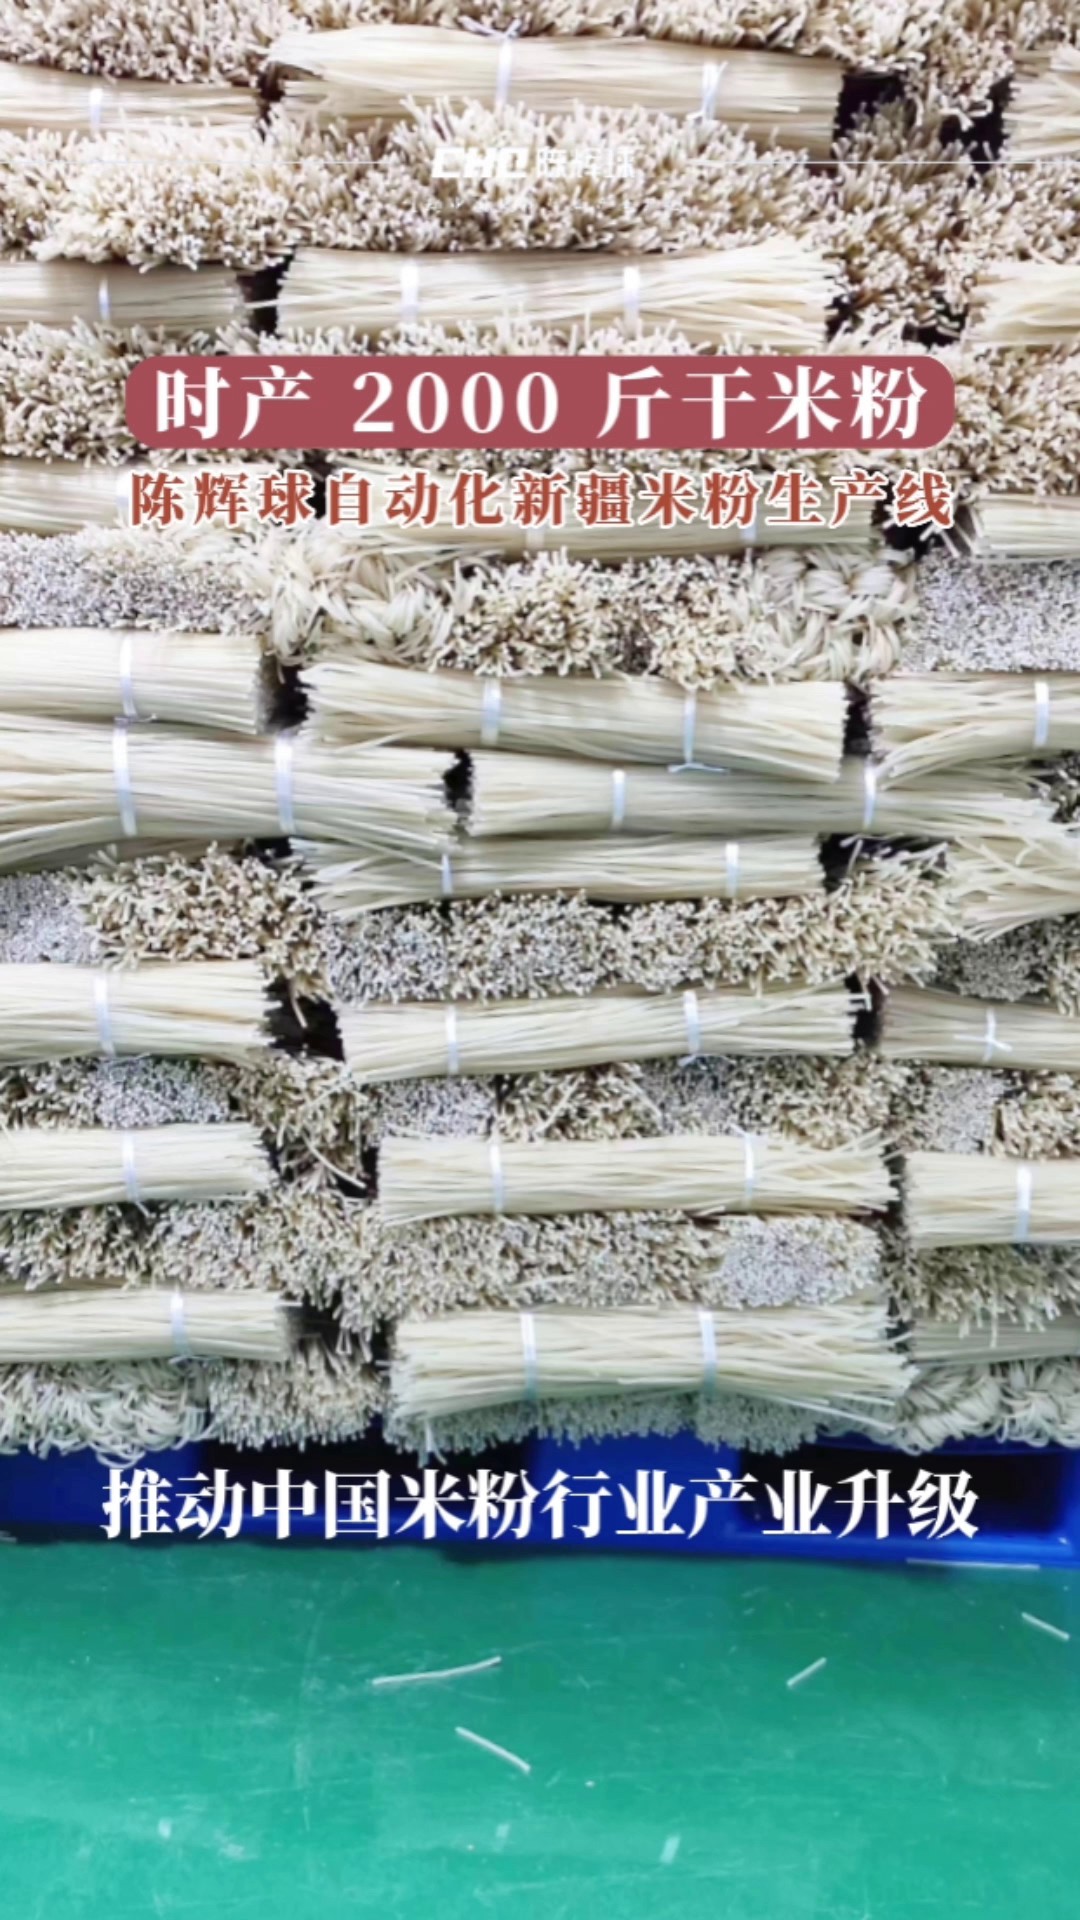 北京米粉生产线生产厂家,米粉生产线